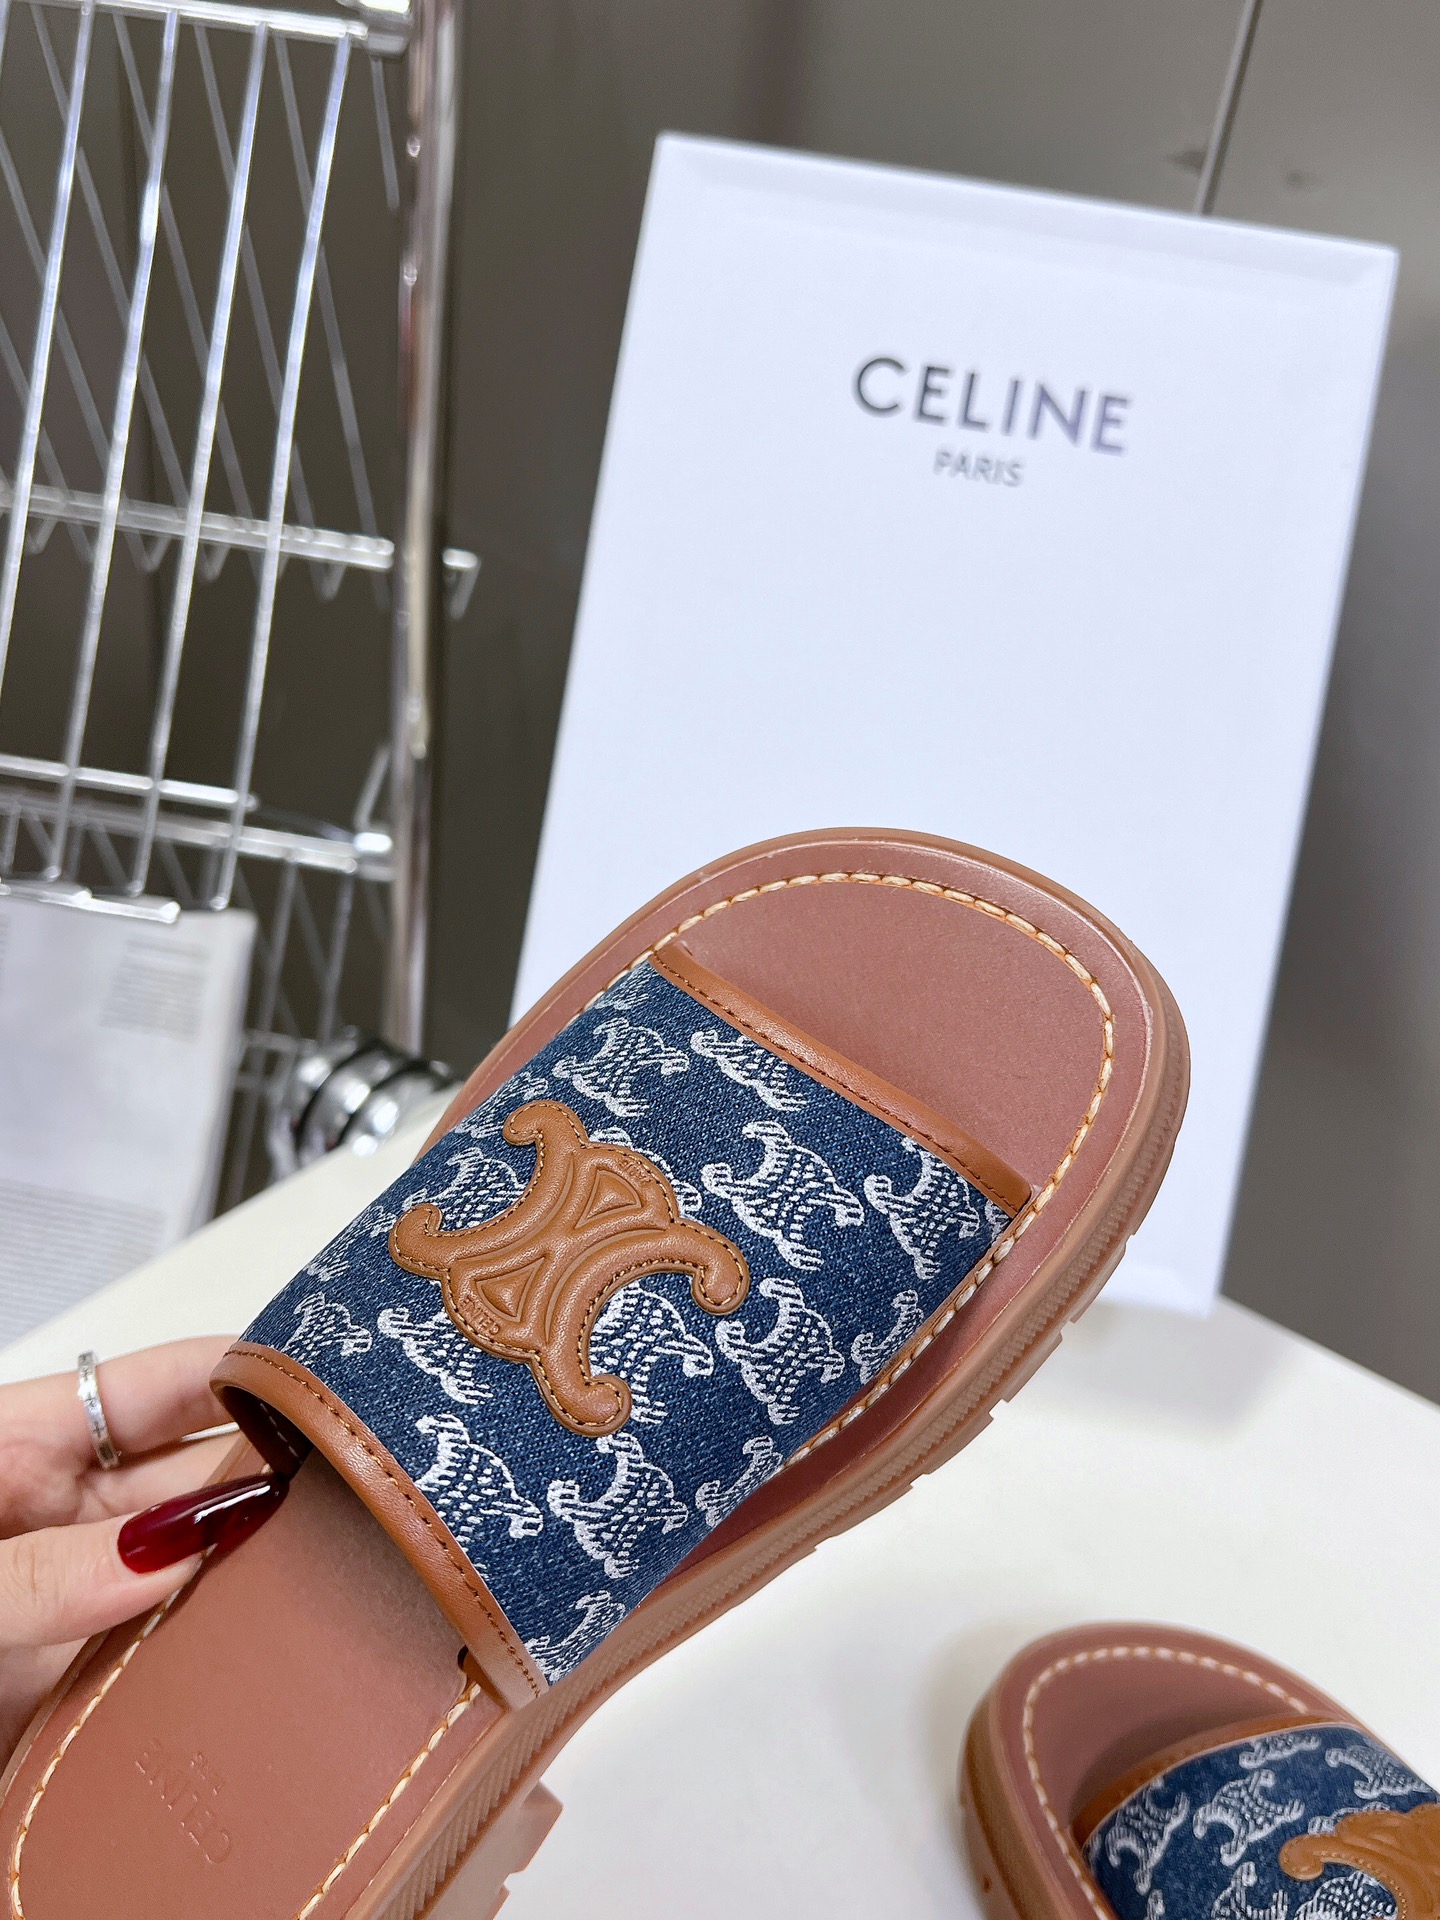 Celine思琳经典春最新爆款沙滩凉鞋夏天搭配袜子简直绝绝子复古的点上带上了满分时髦感颜值原版购入开发依